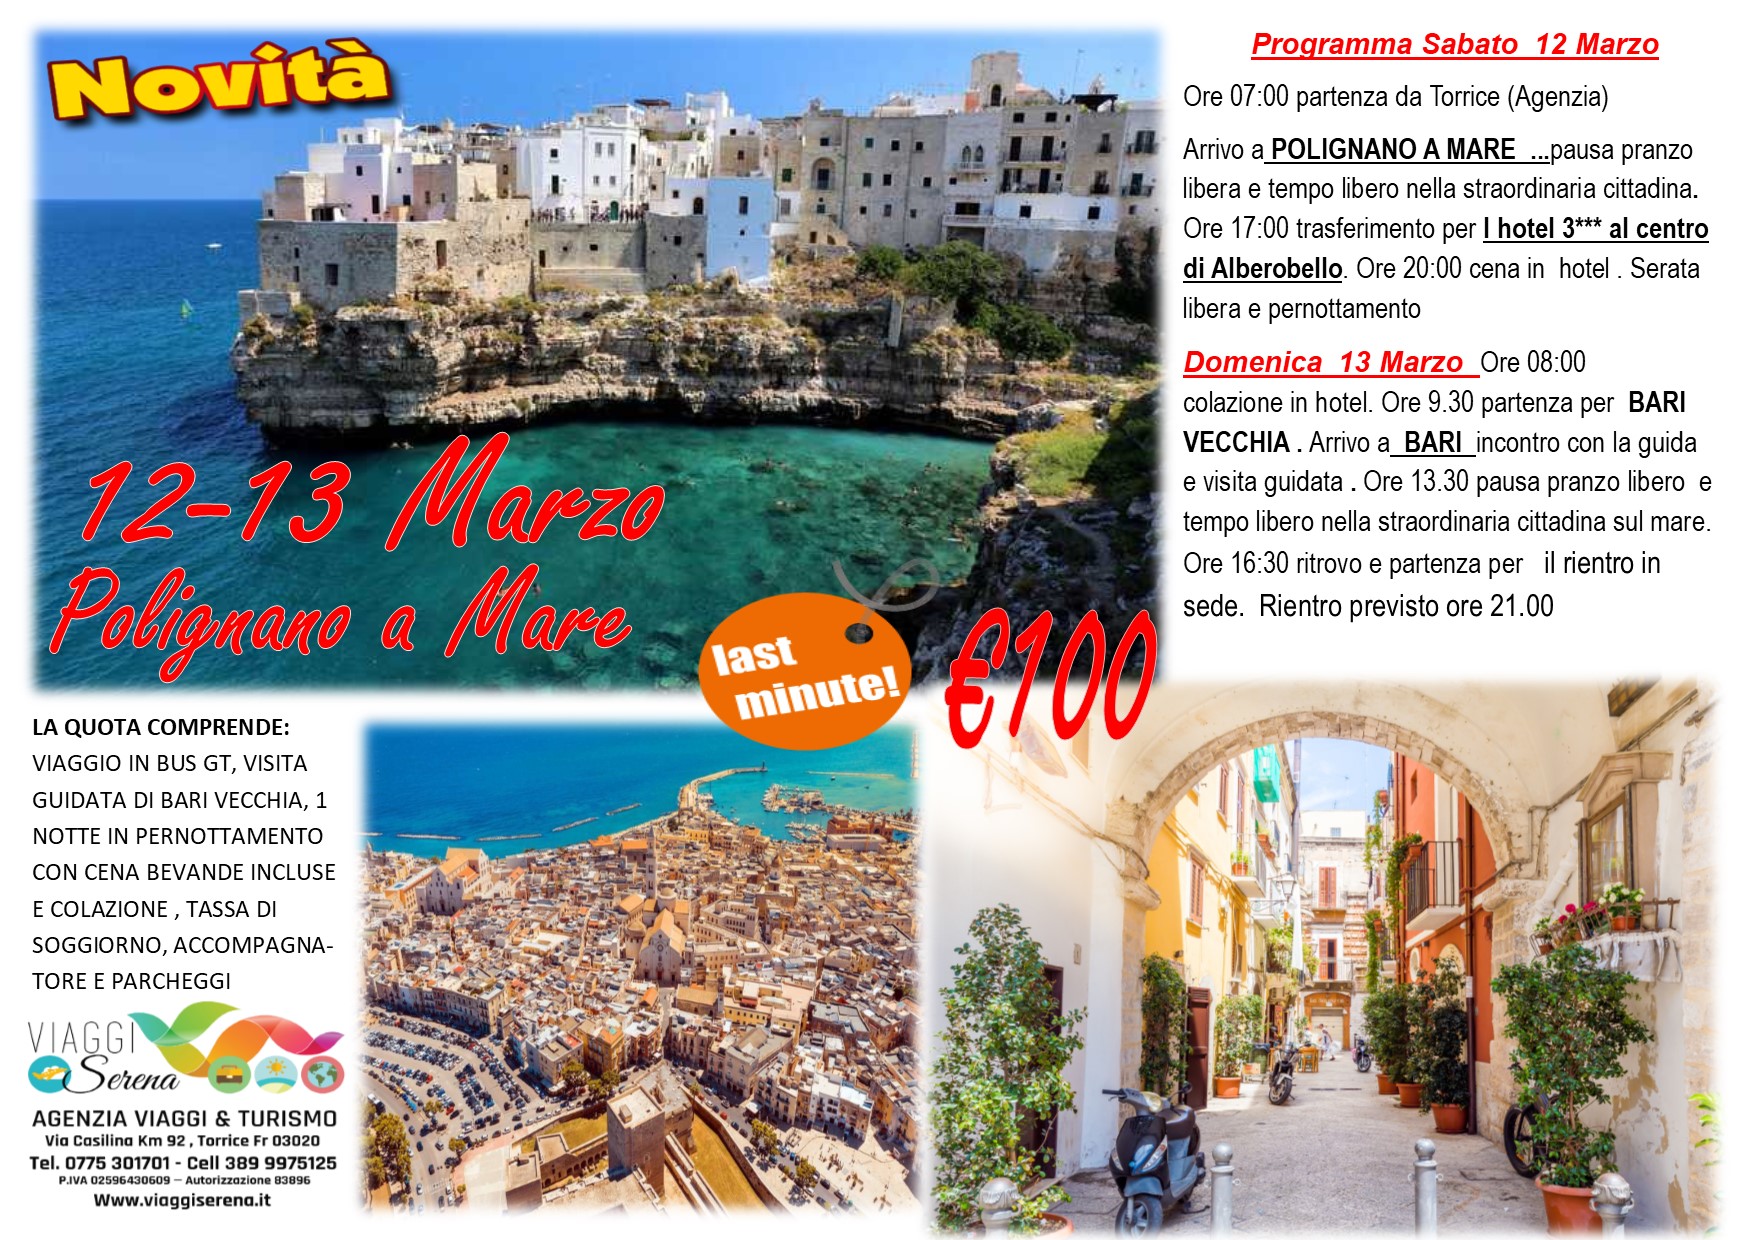 Viaggi di Gruppo: Alberobello, Polignano a mare & Bari Vecchia  12-13 Marzo € 100,00